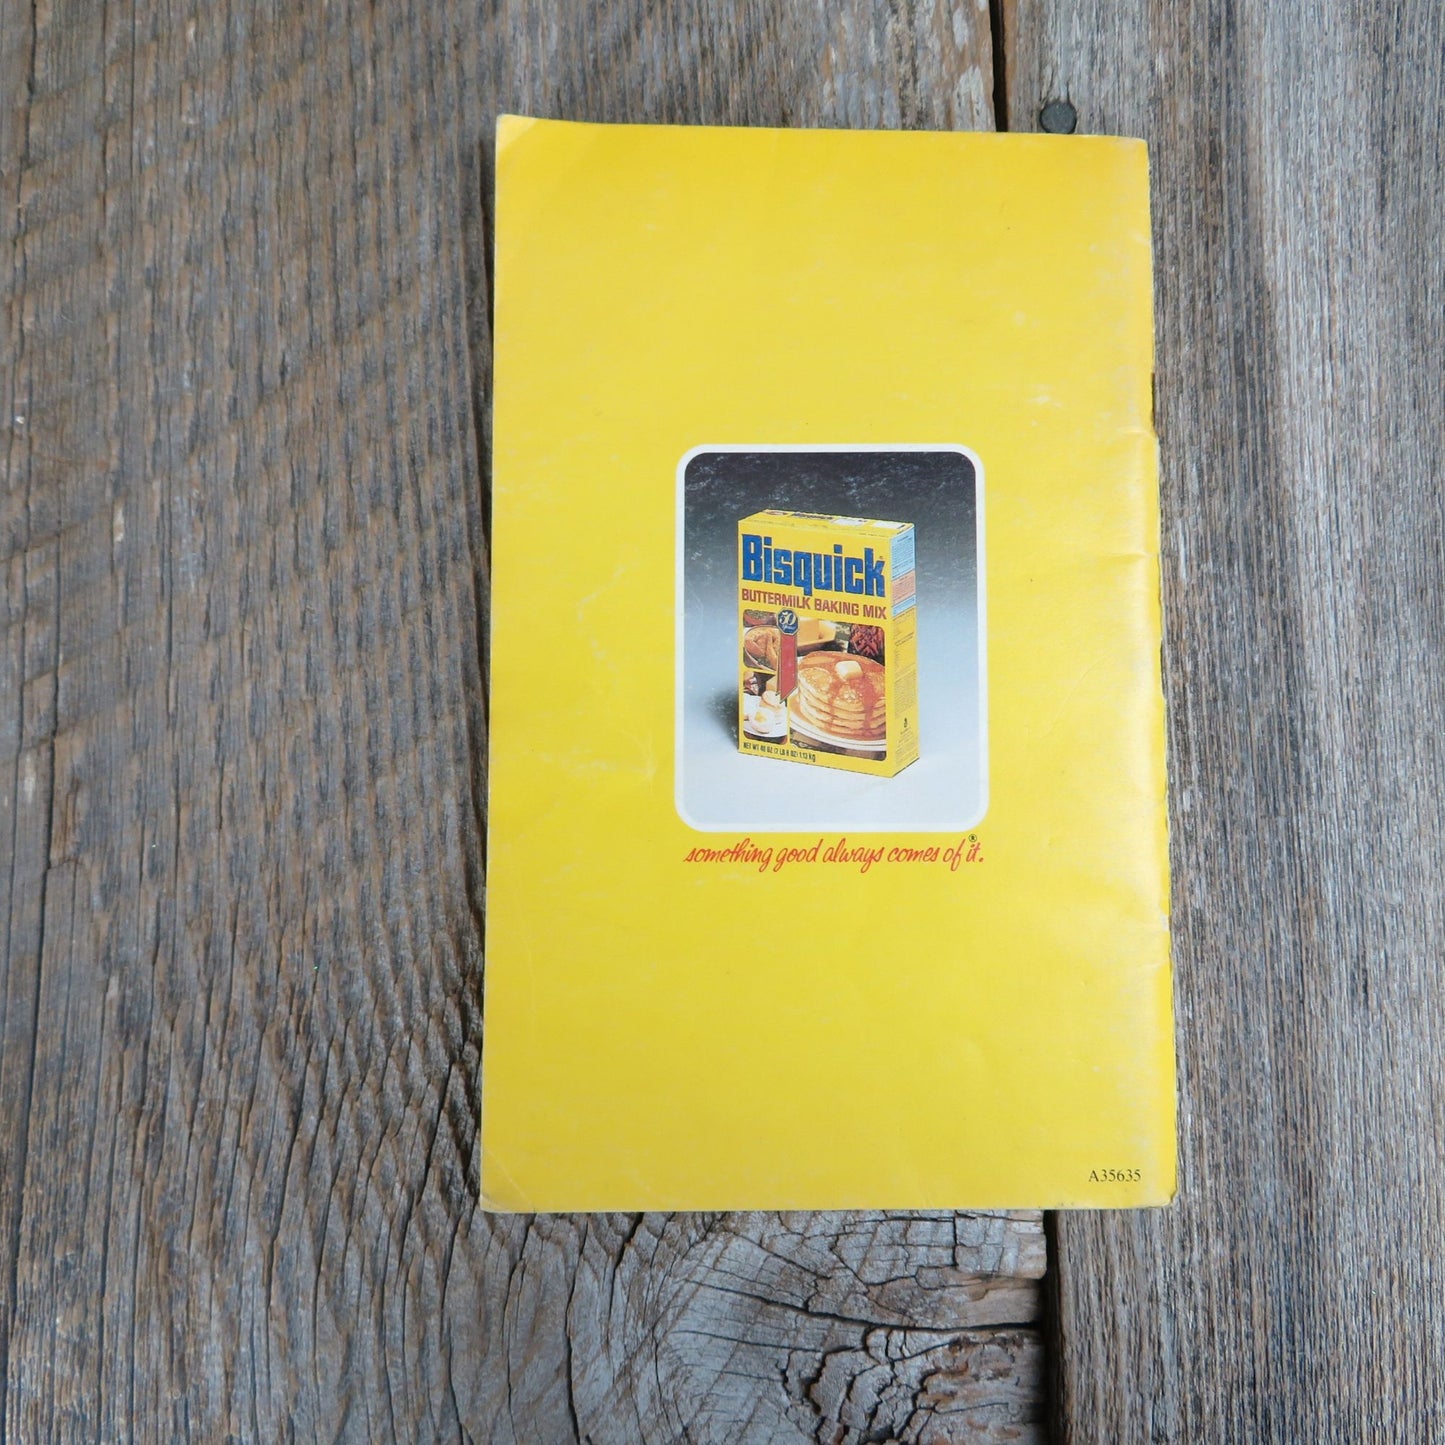 Vintage Bisquick Pamphlet Cookbook Betty Crocker's Creative Recipes Booklet 1980 Paperback General Mills